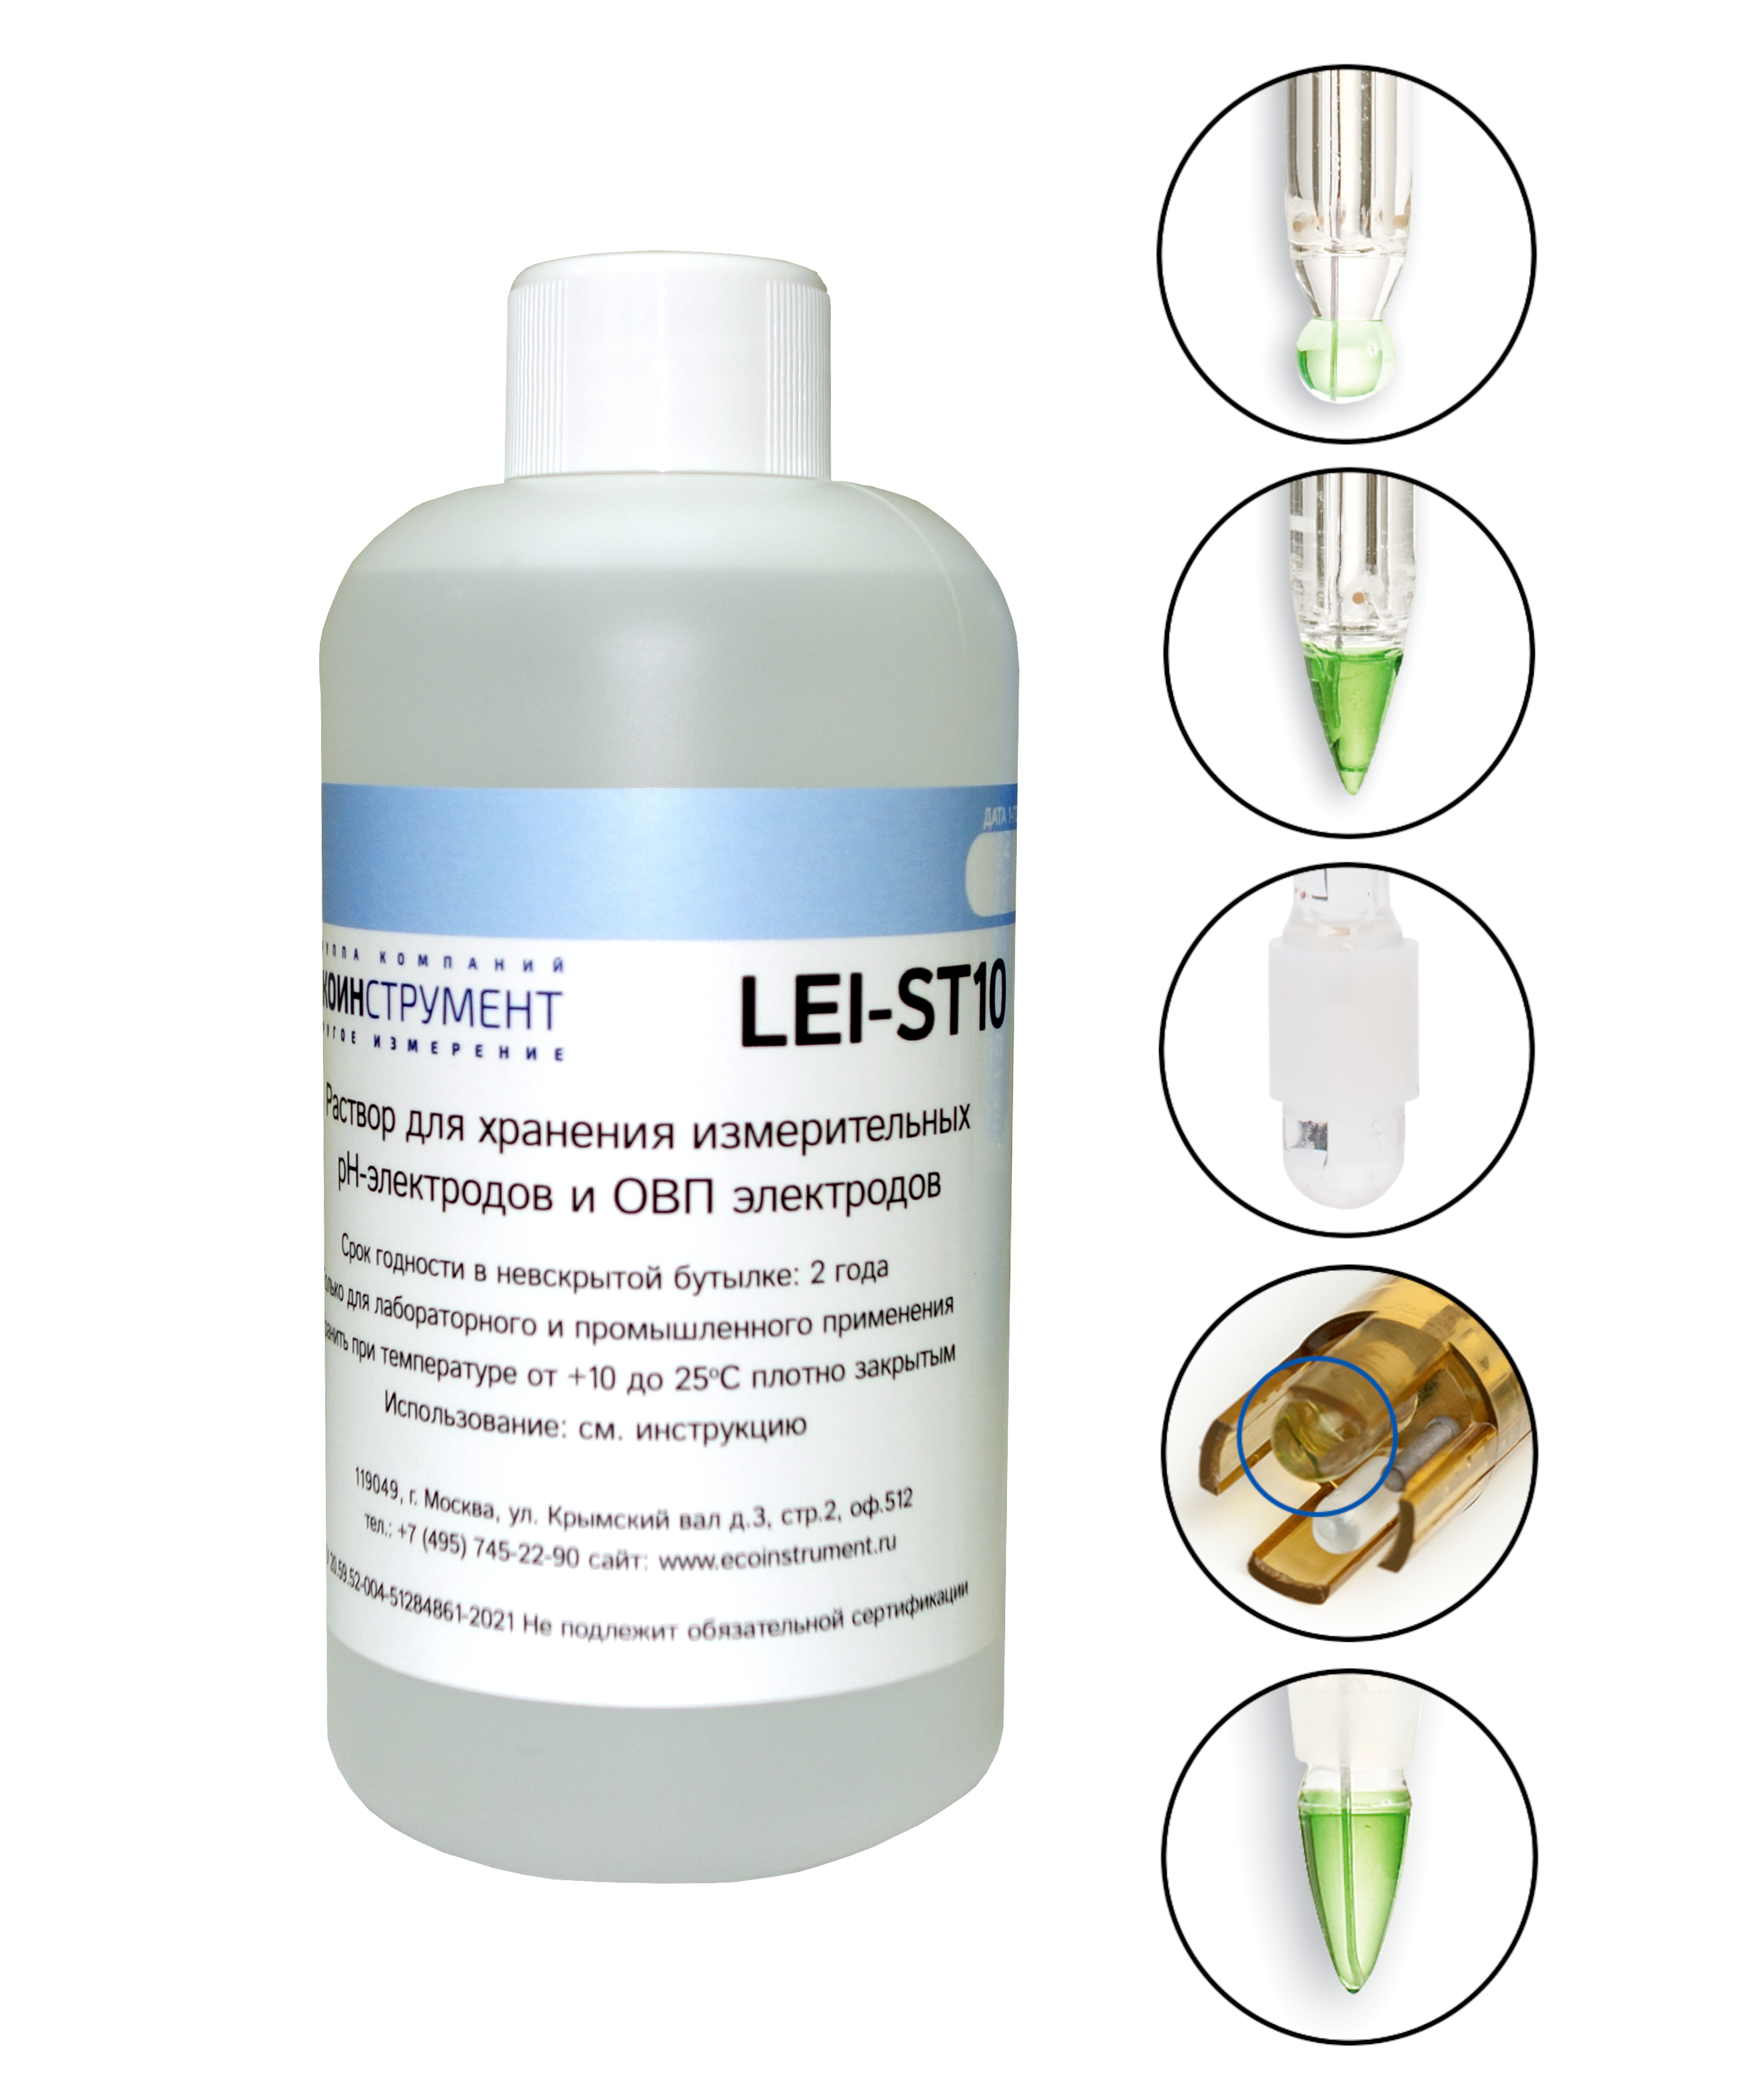 LEI-ST10 Раствор для хранения рН и ОВП электродов